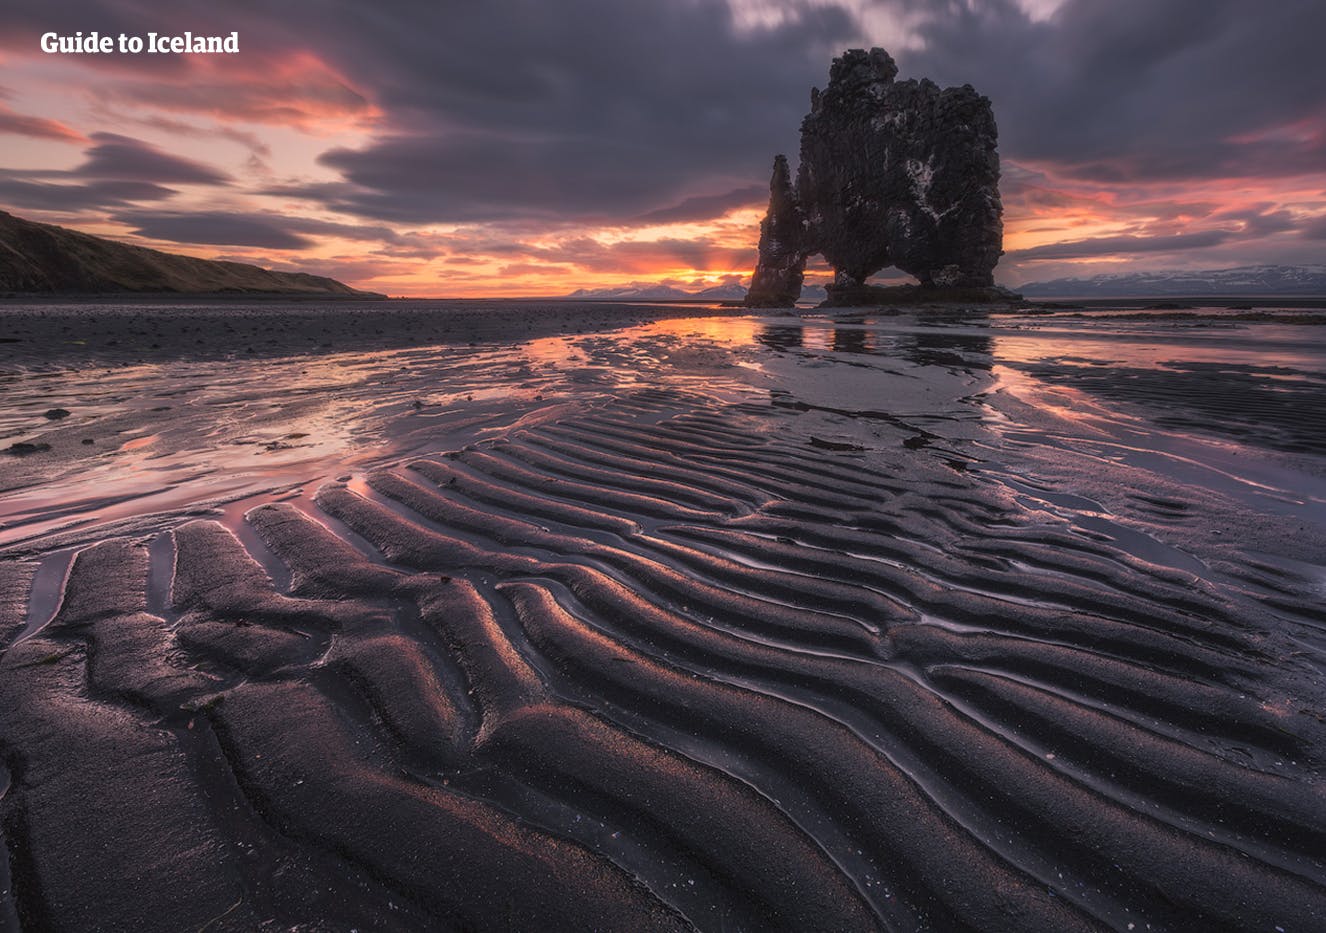 คาบสมุทรวาทน์สเนสในทางเหนือของไอซ์แลนด์มีเสาหินฮวิทแซร์กูร์ตั้งอยู่อย่างโดดเดี่ยว